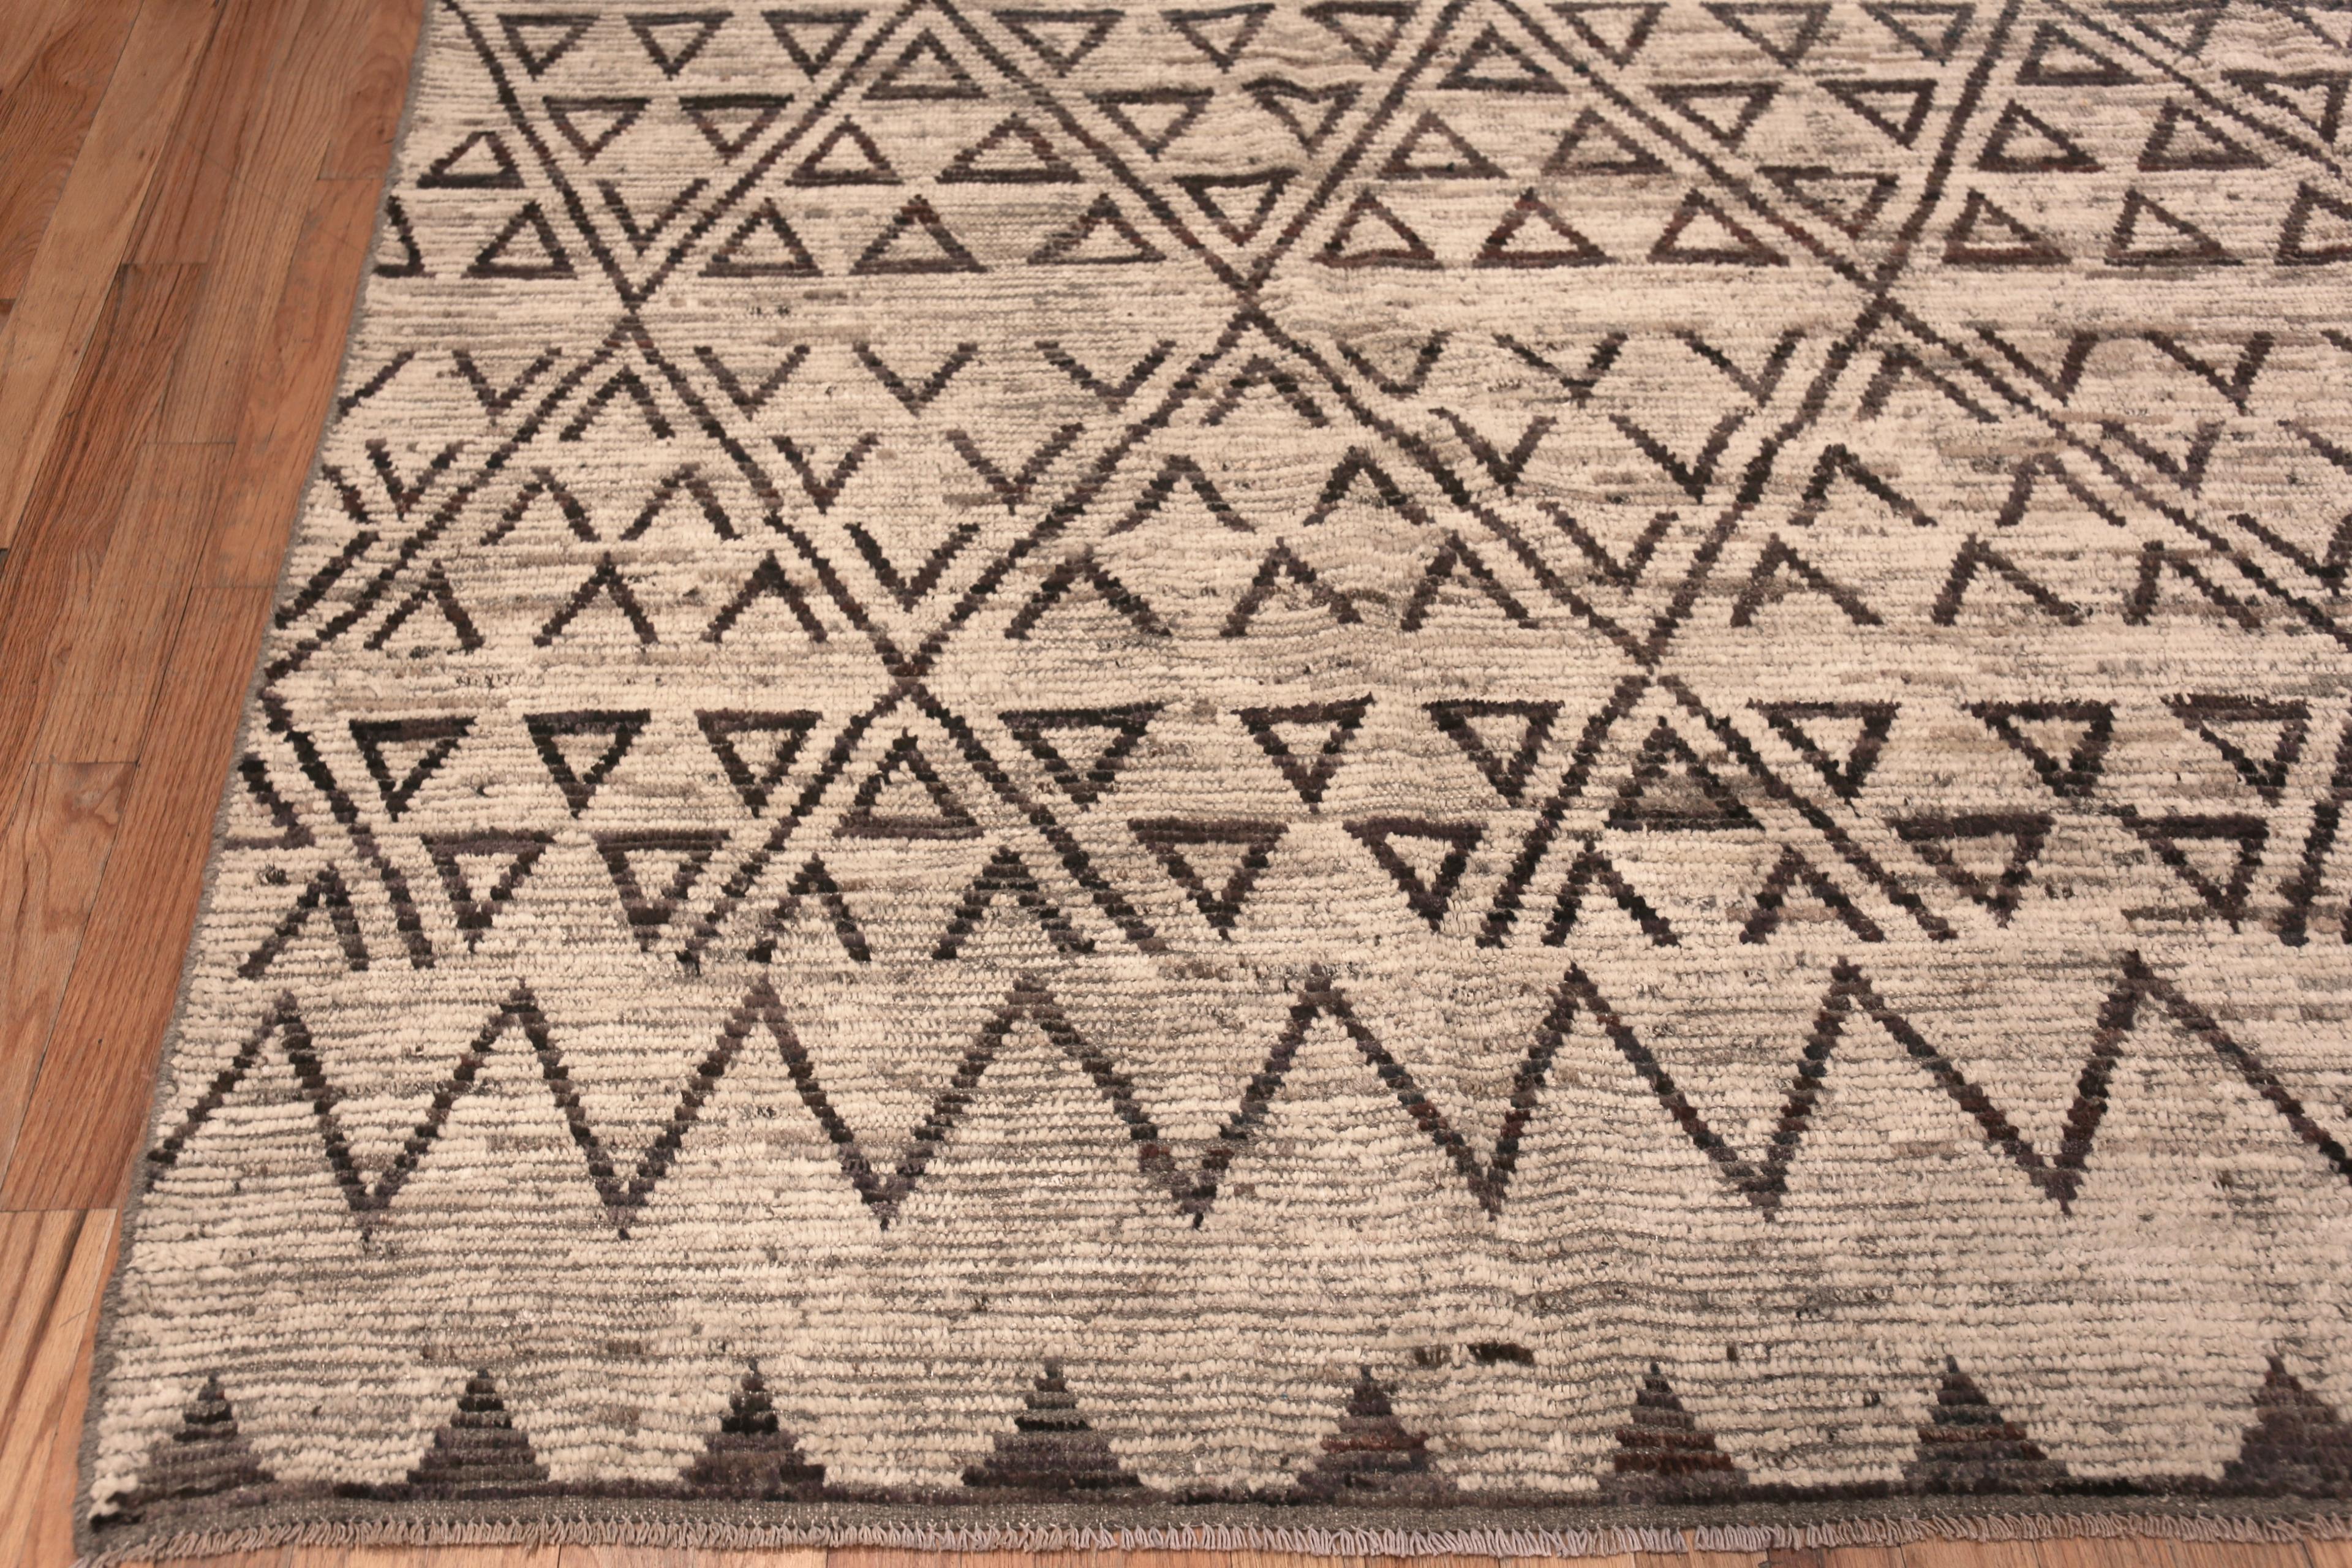 Nazmiyal Collection Tribal Nomadic Geometric Design Modern Rug 9'6